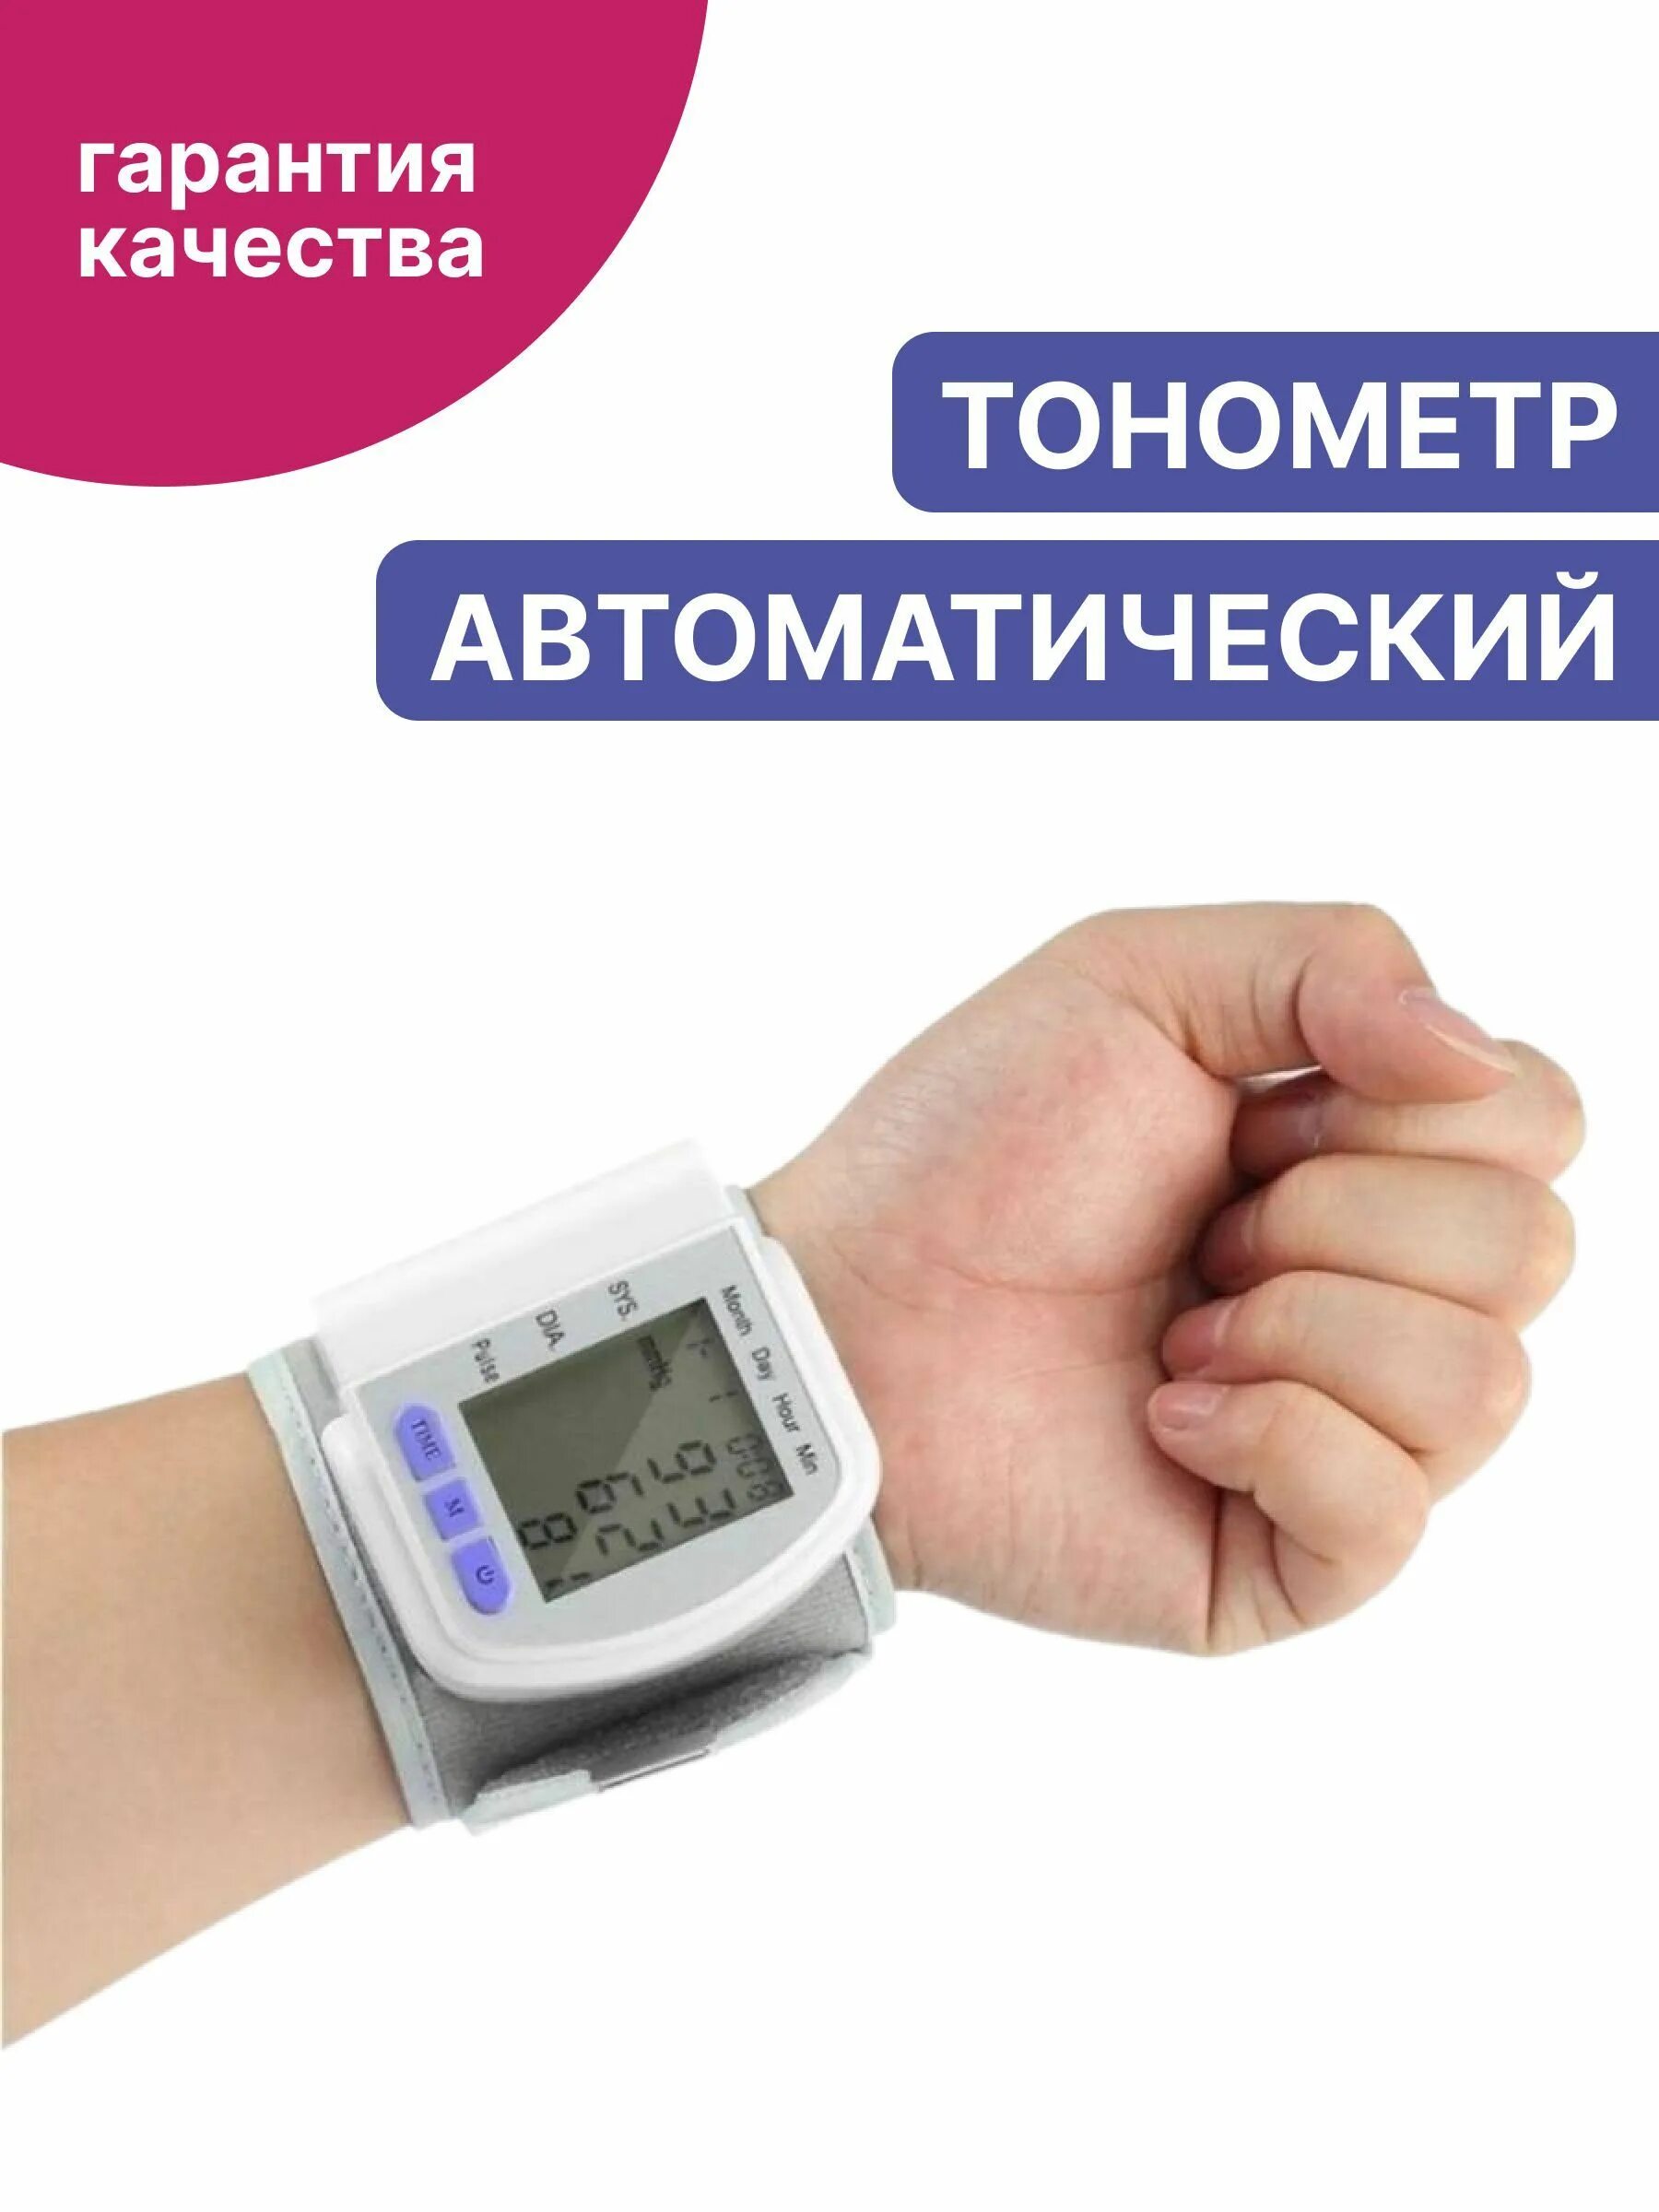 Тонометры на запястье купить на озон. Blood Pressure Monitor CK-102s. Тонометр u-Kiss Wrist Blood Pressure Monitor device. Тонометр автоматический CK-102s на запястье, электронный. Цифровой тонометр Blood Pressure Monitor CK-102s.